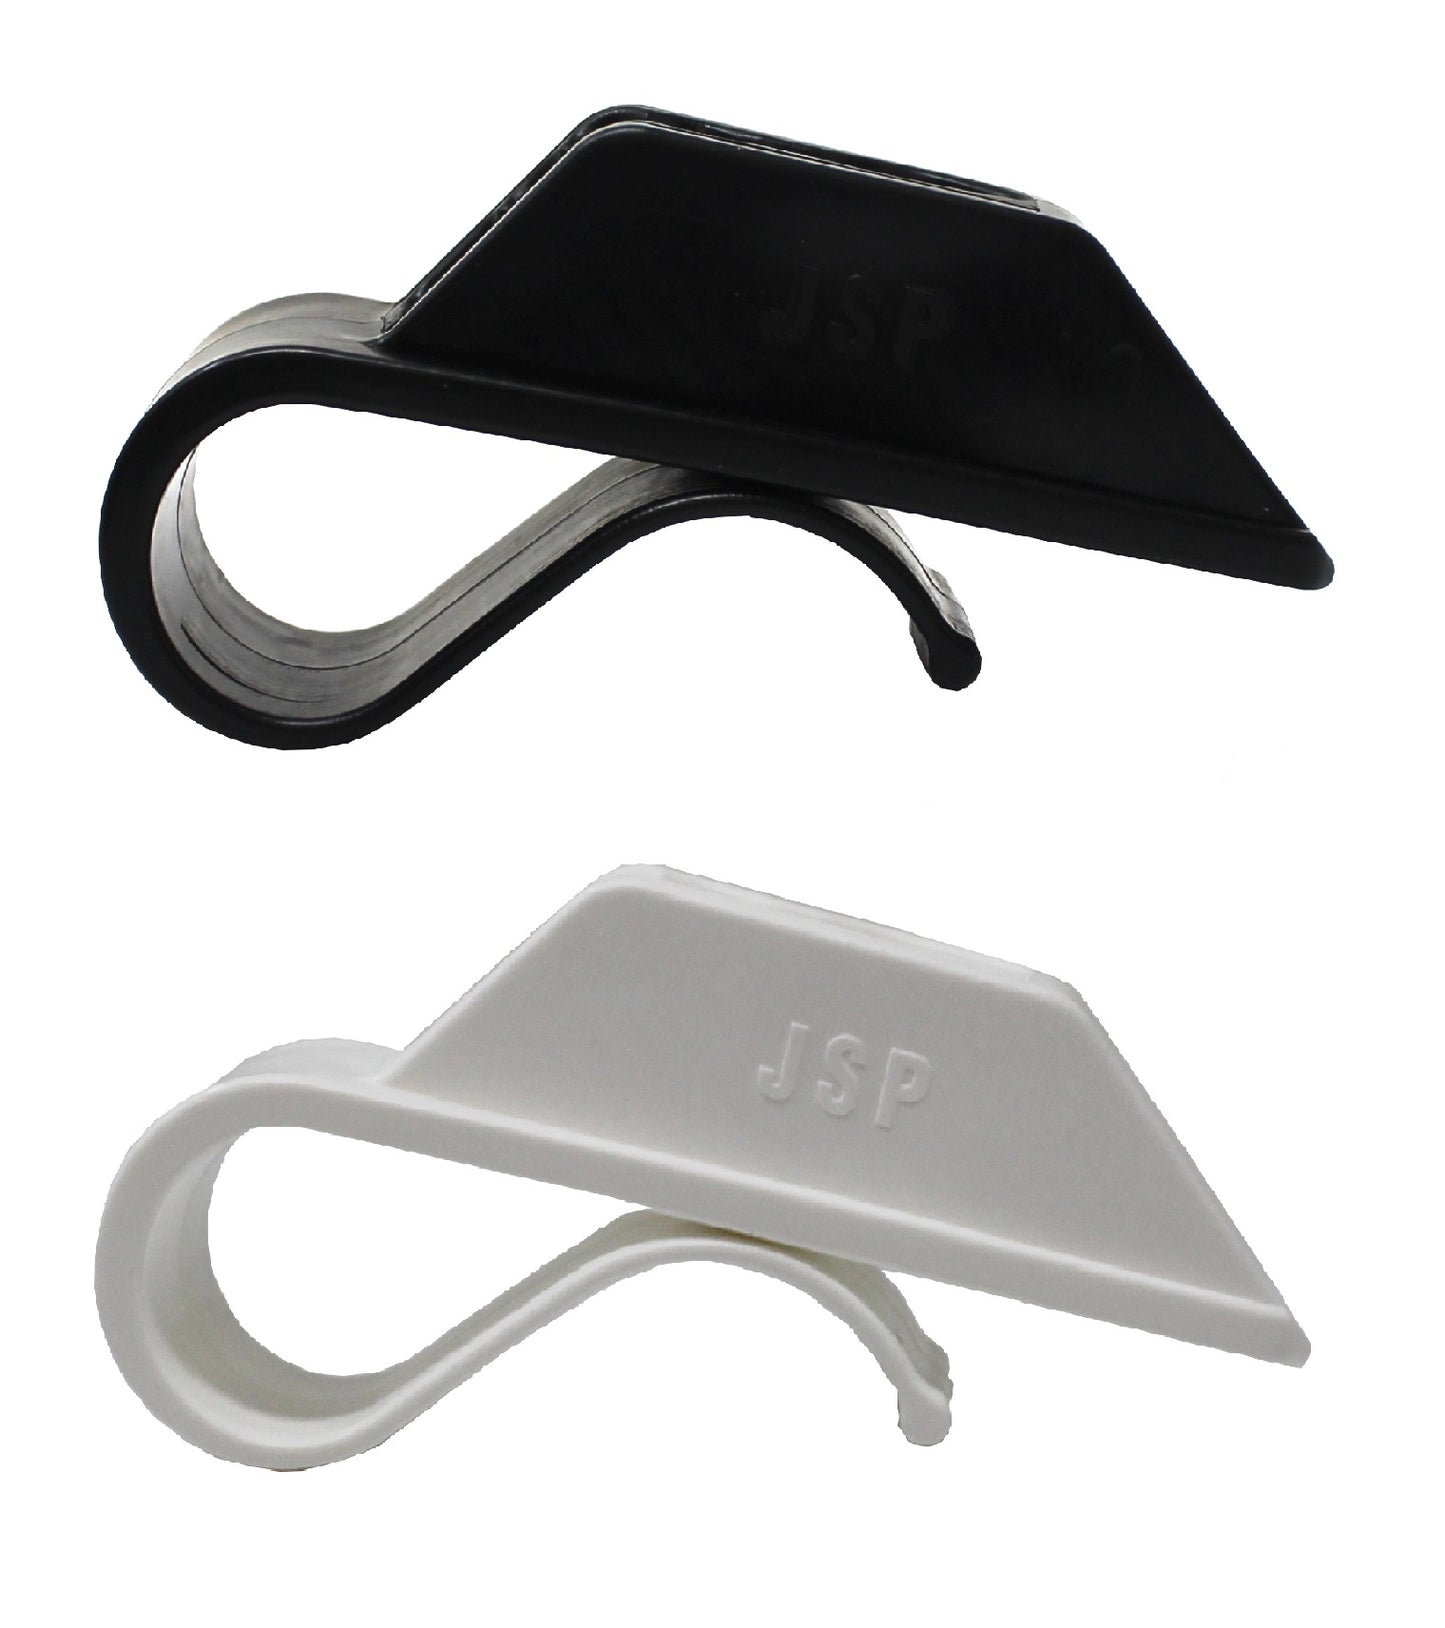 Black or White Plastic Fender Hanger Adjuster Clip for 1" Round Boat Rails Quick Adjust Bumpers